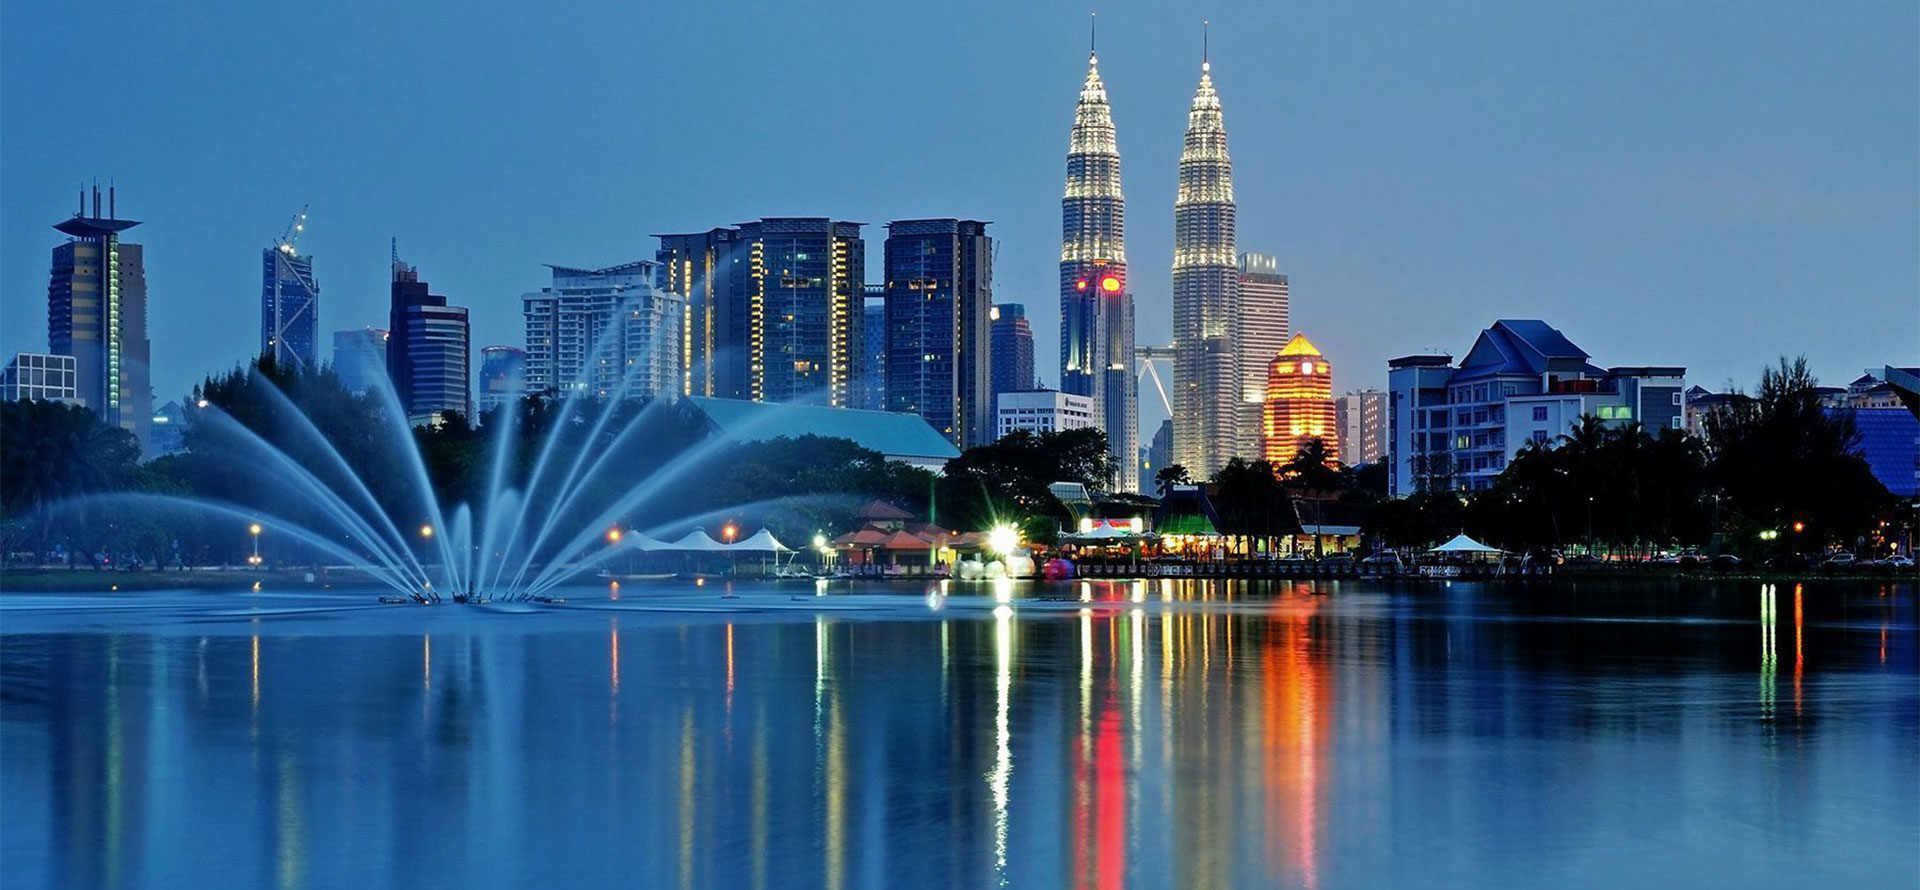 Night city in Malaysia.